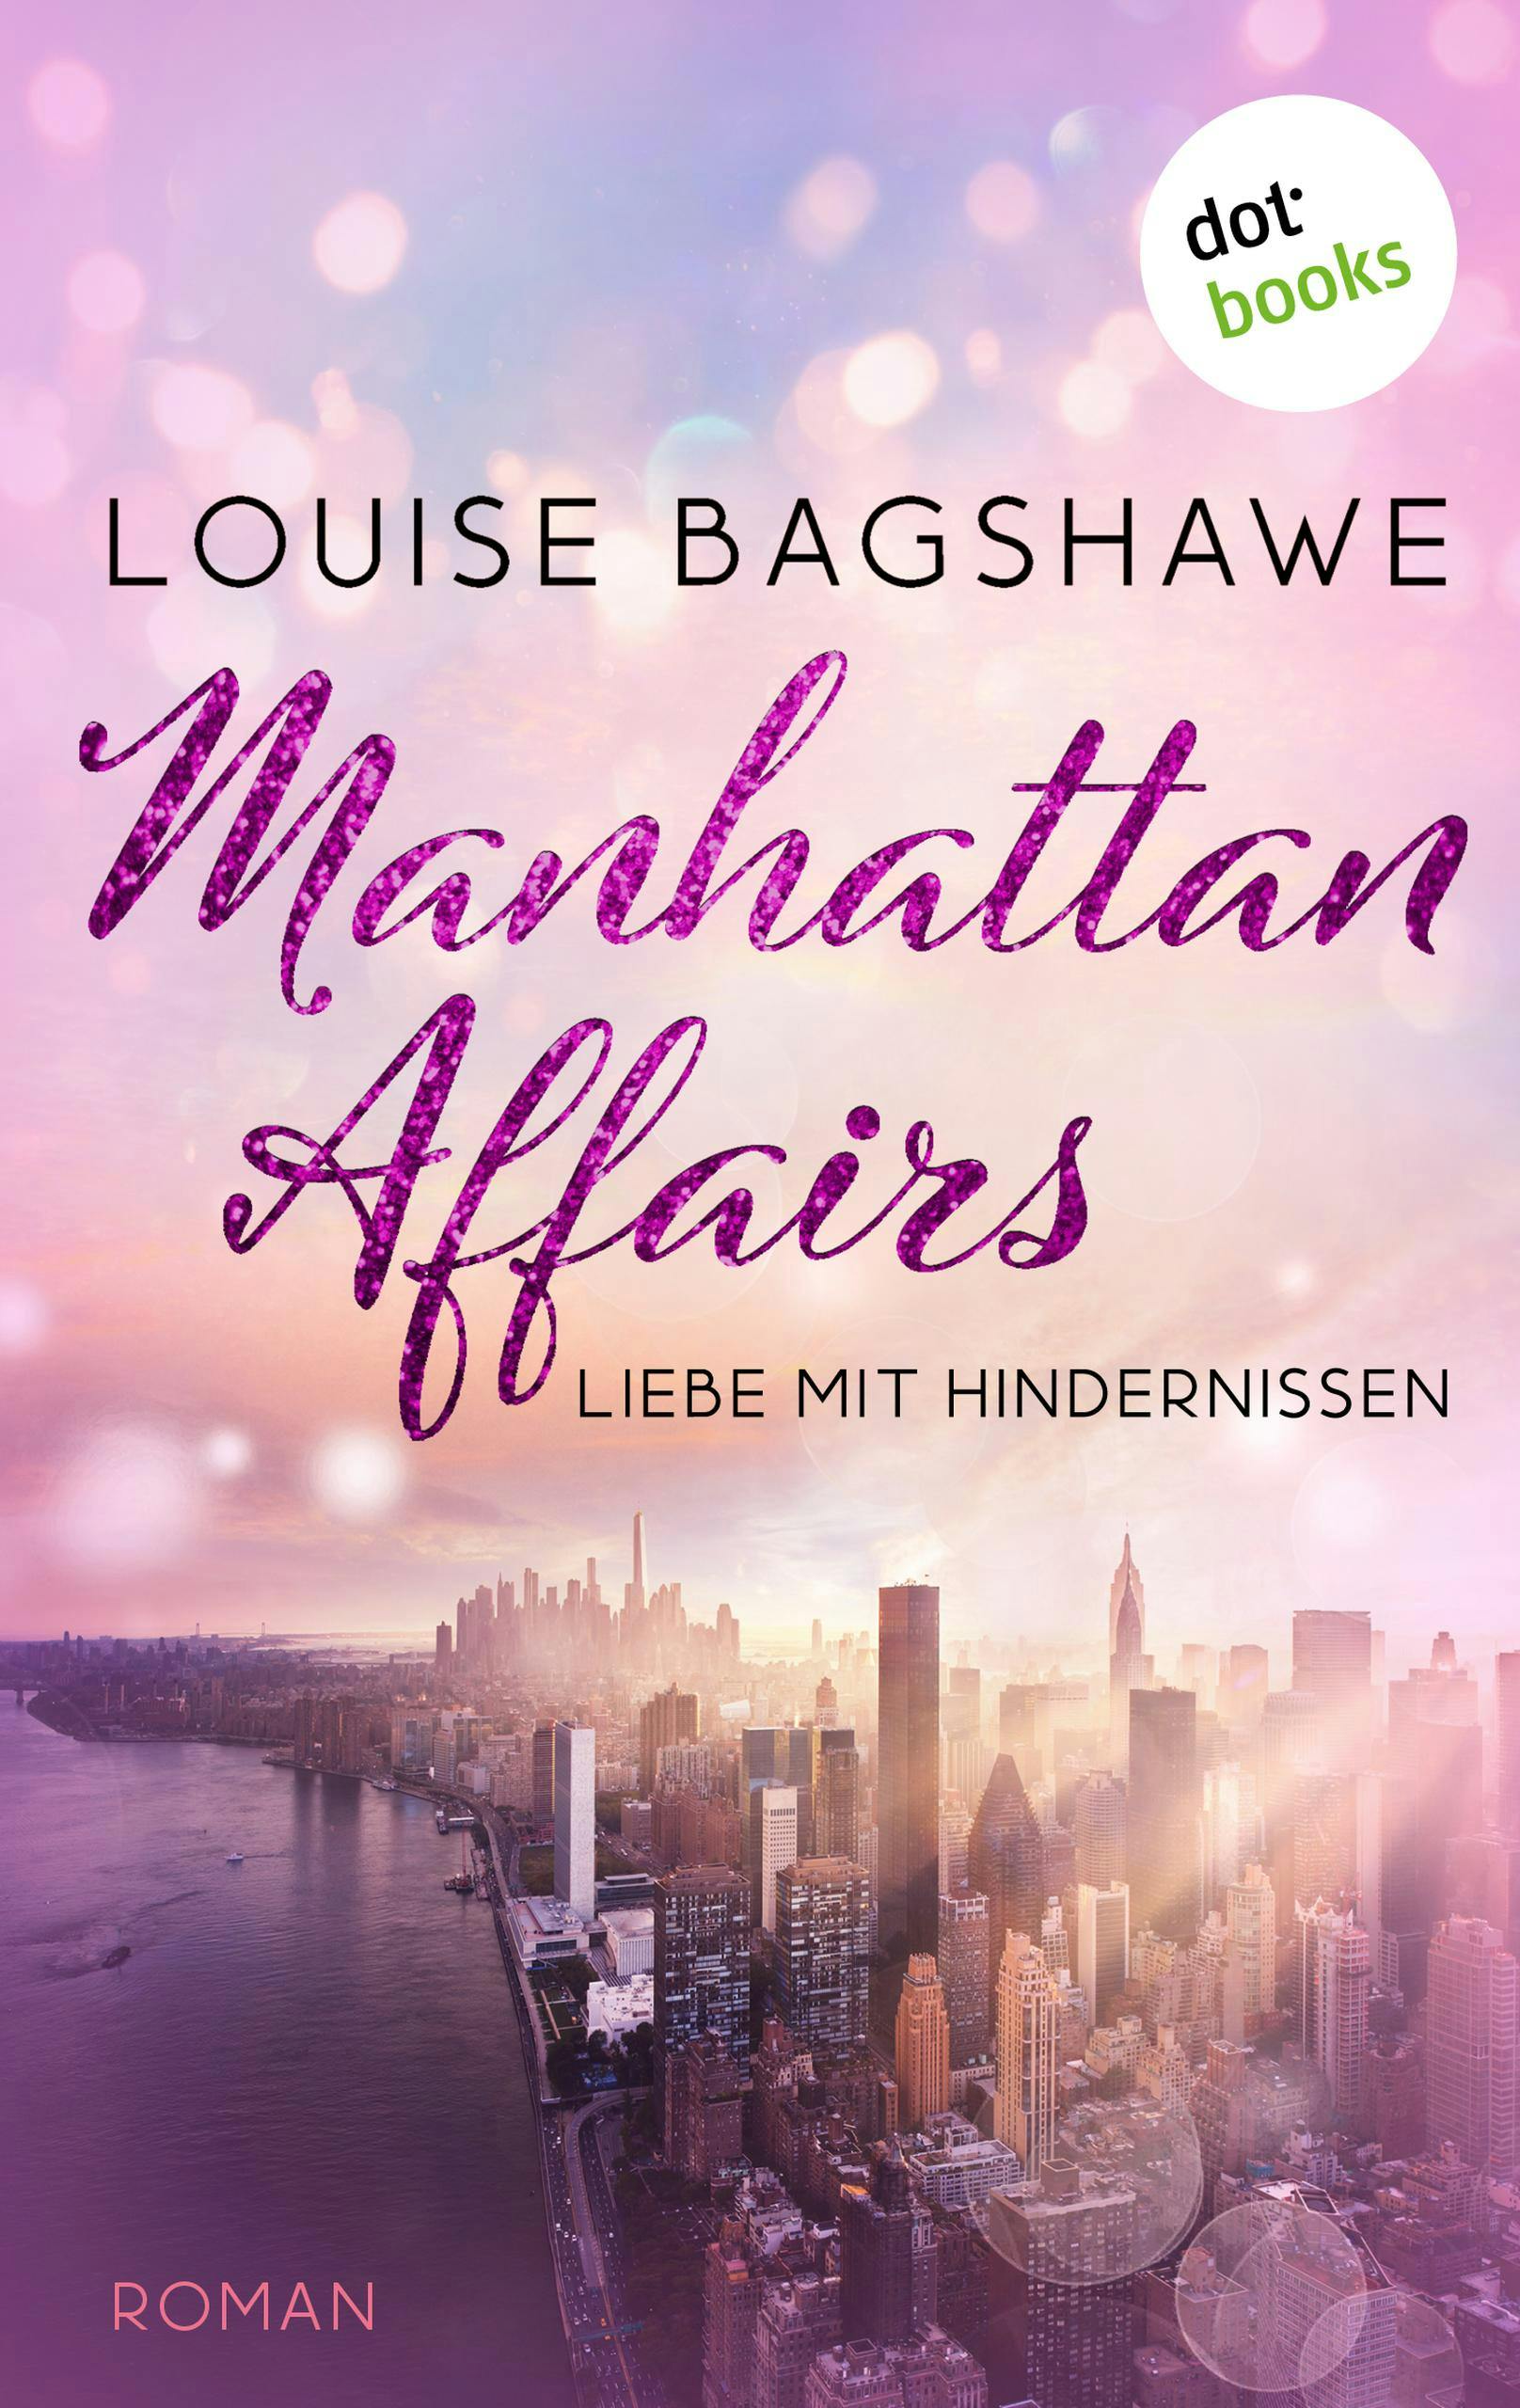 Manhattan Affairs, E-book, Louise Bagshawe